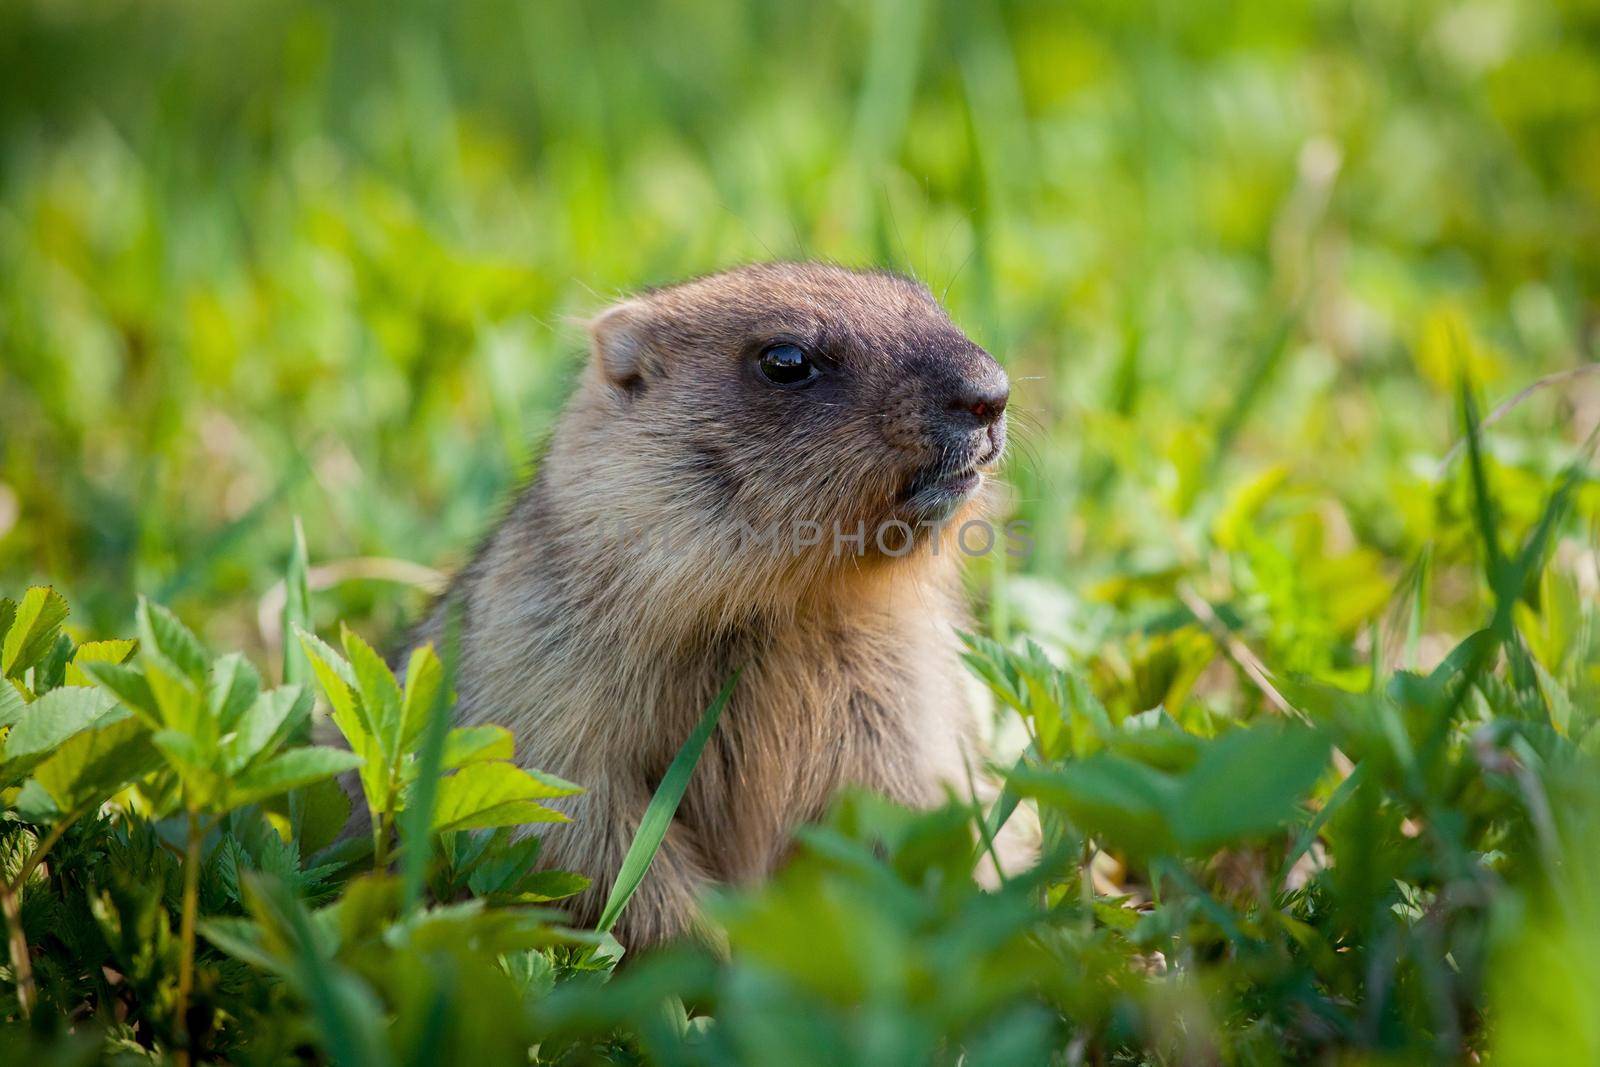 The bobak marmot cub on grass, Marmota bobak, or steppe marmot